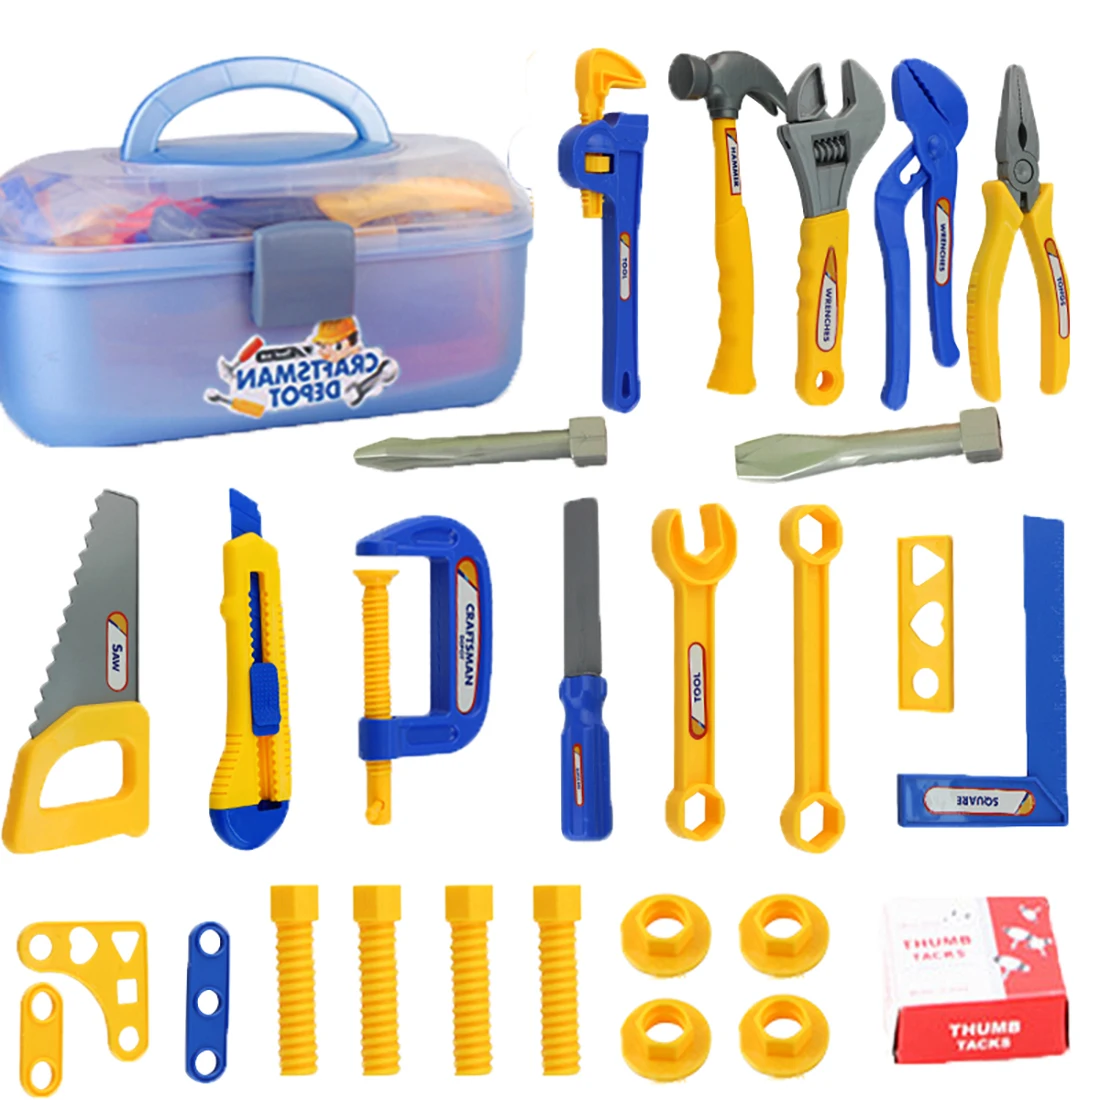 Surwish 28 шт. набор инструментов для ремонта мальчика чехол для обслуживания чехол для переноски Набор ролевых игр игрушка для детей